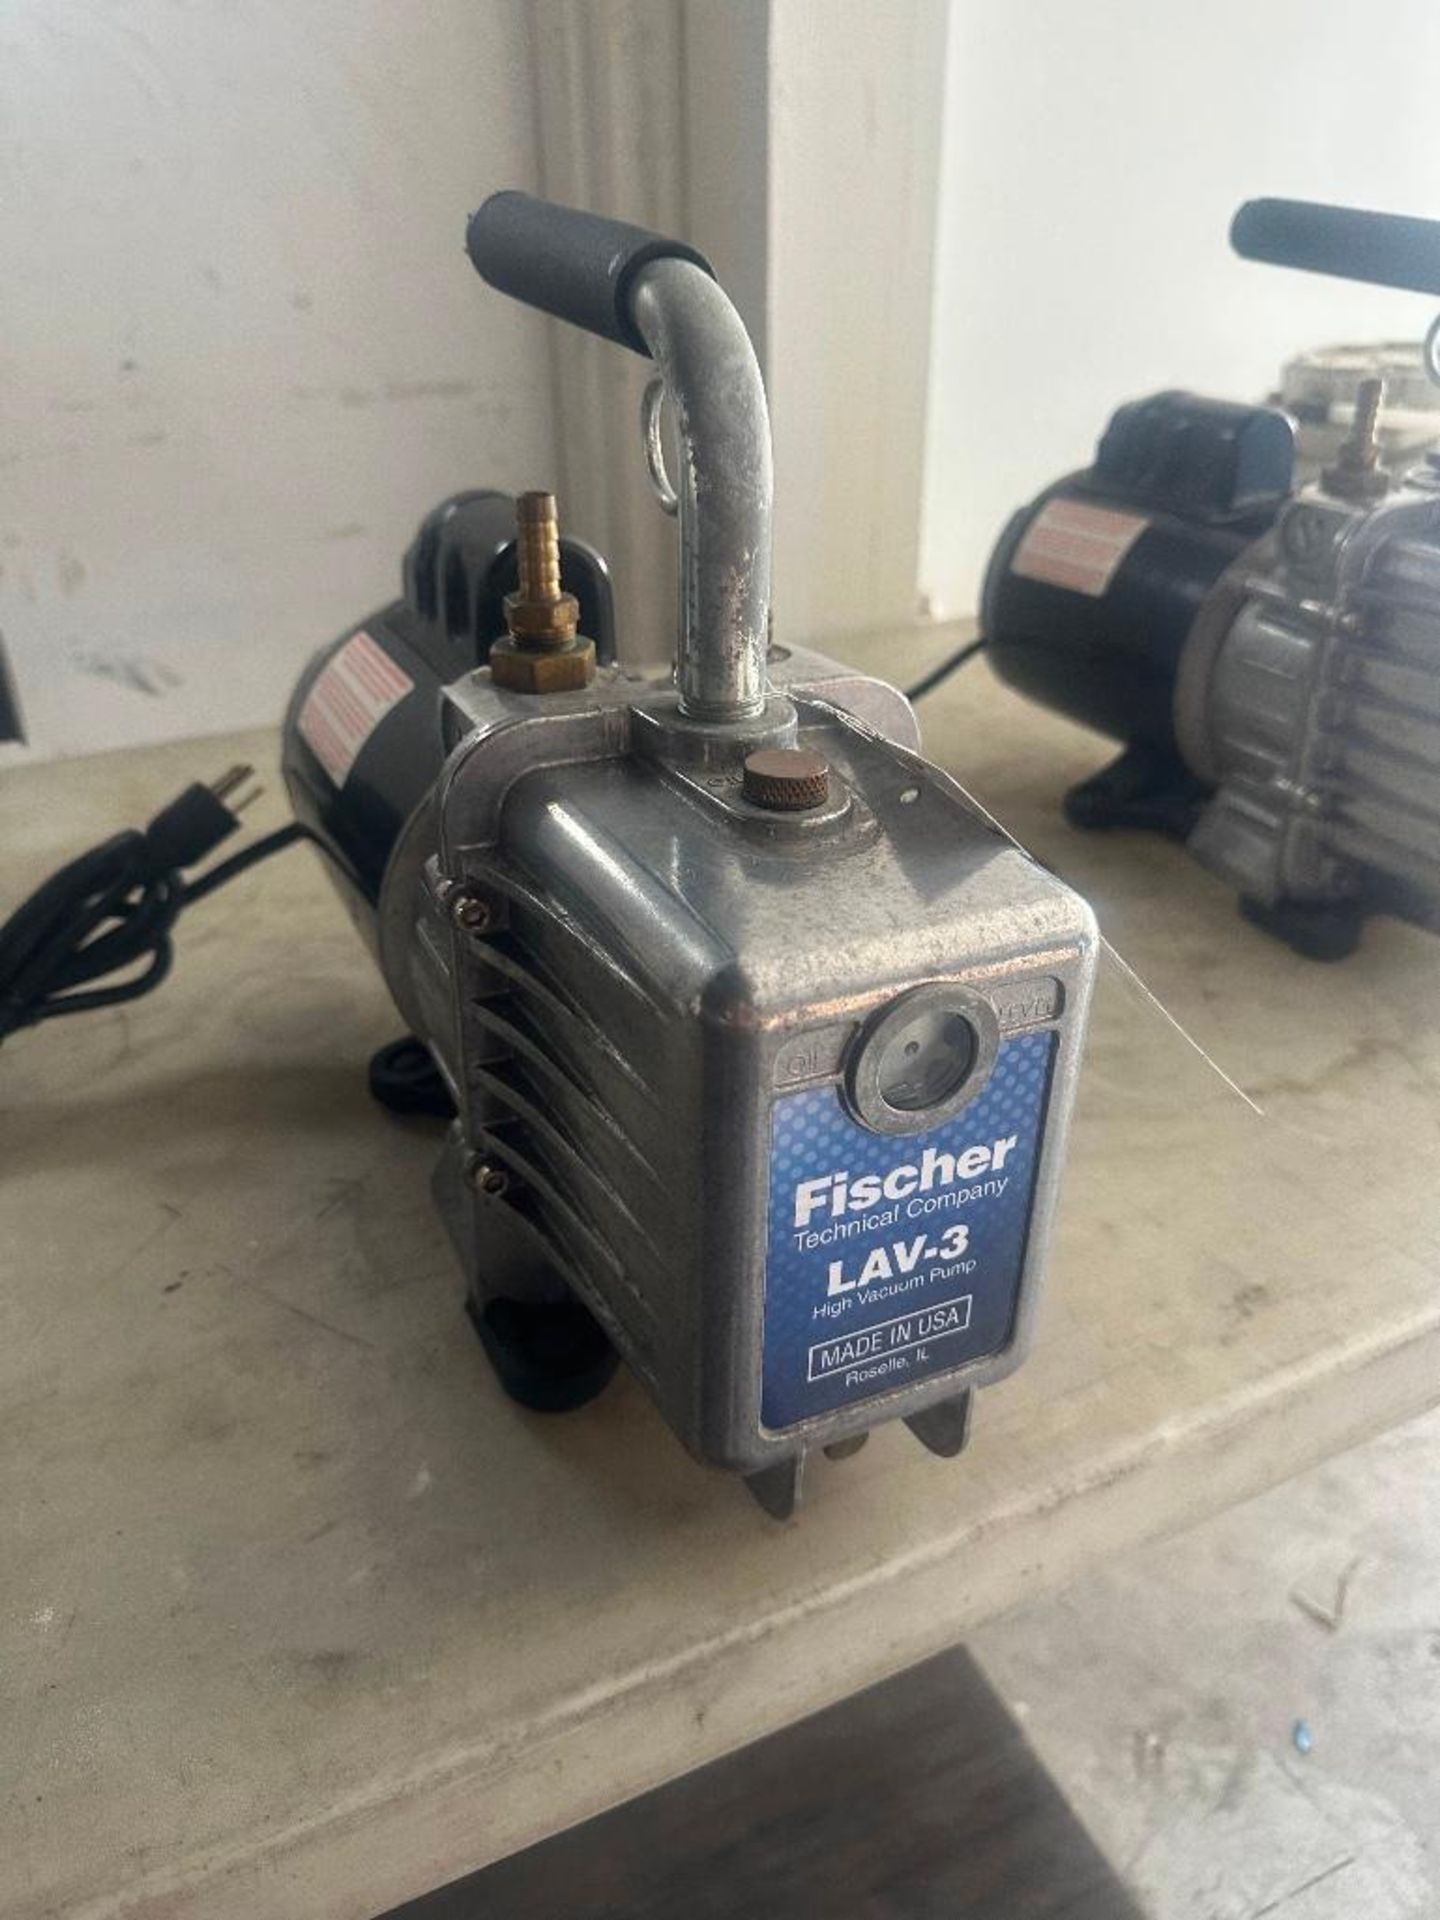 Fischer Technical Co. High Vacuum Pump LAV-3